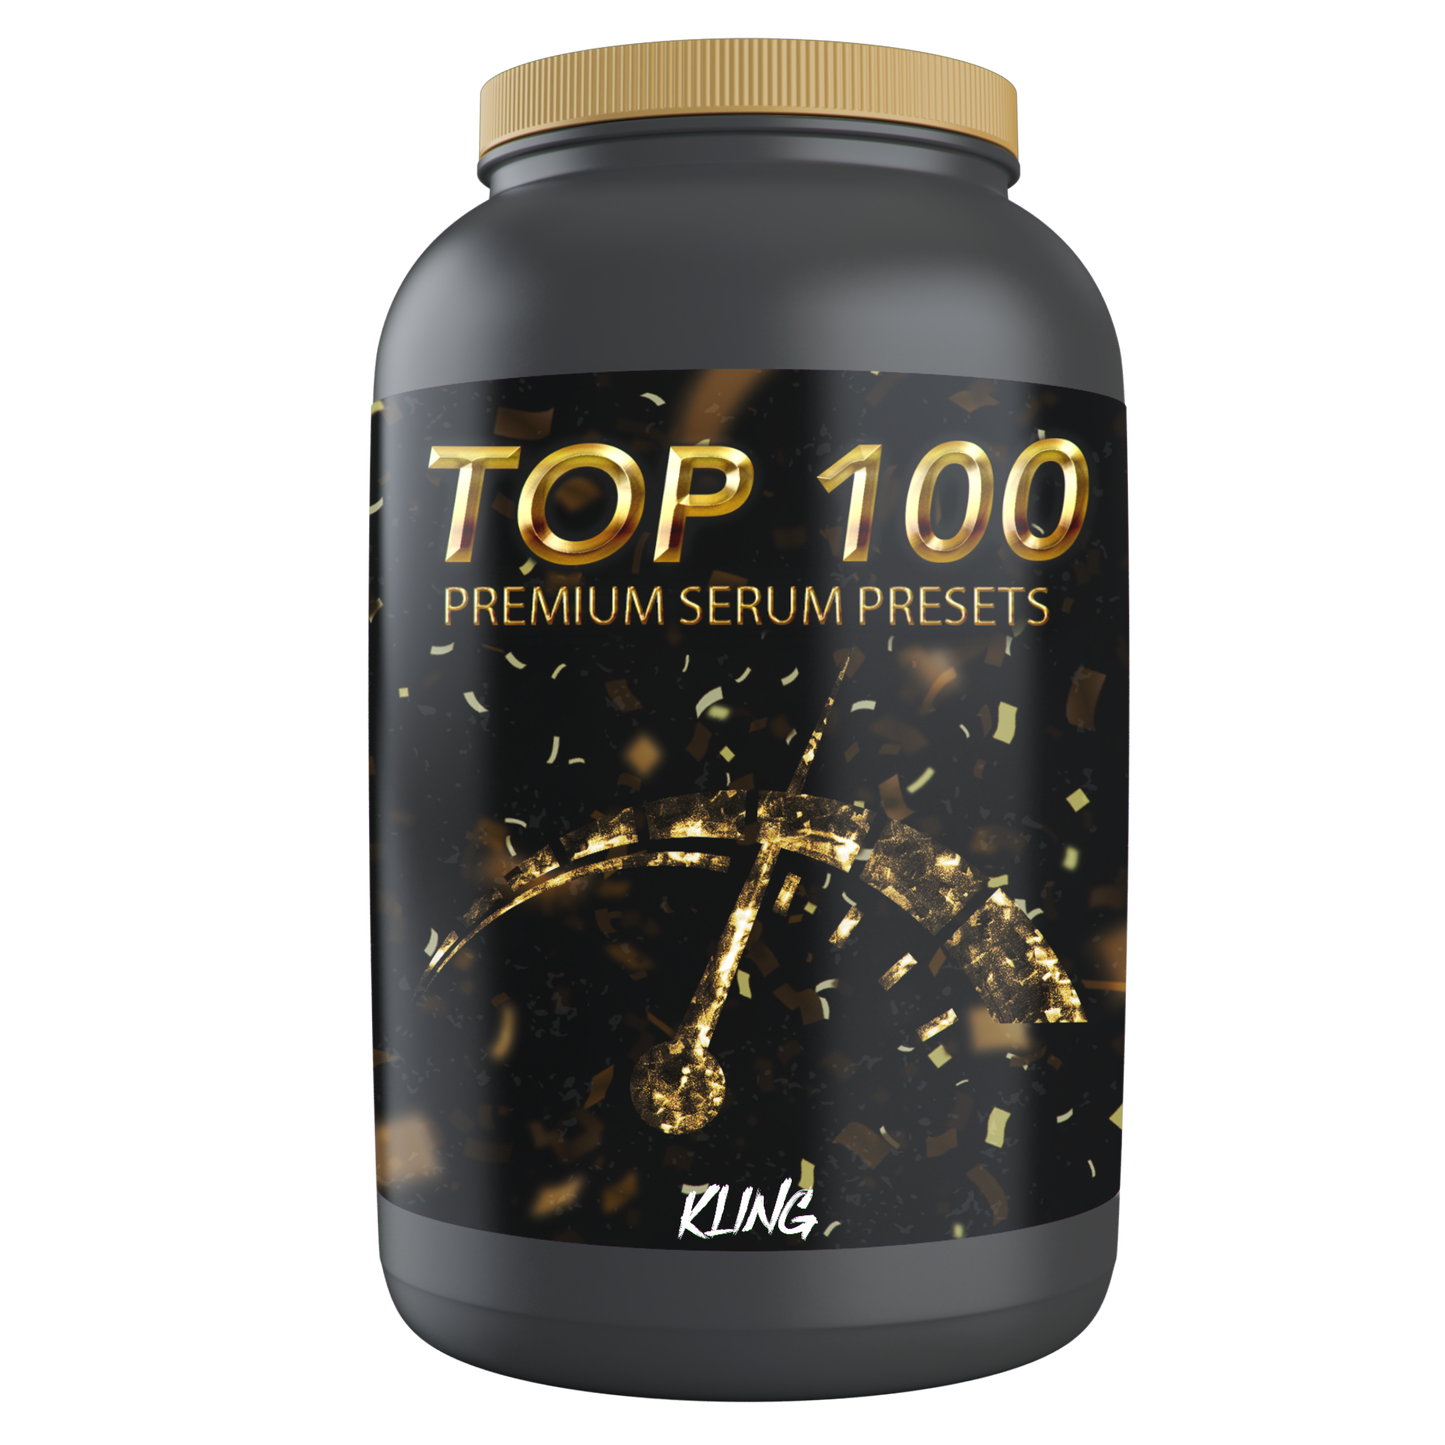 Top 100 | Premium Serum Presets